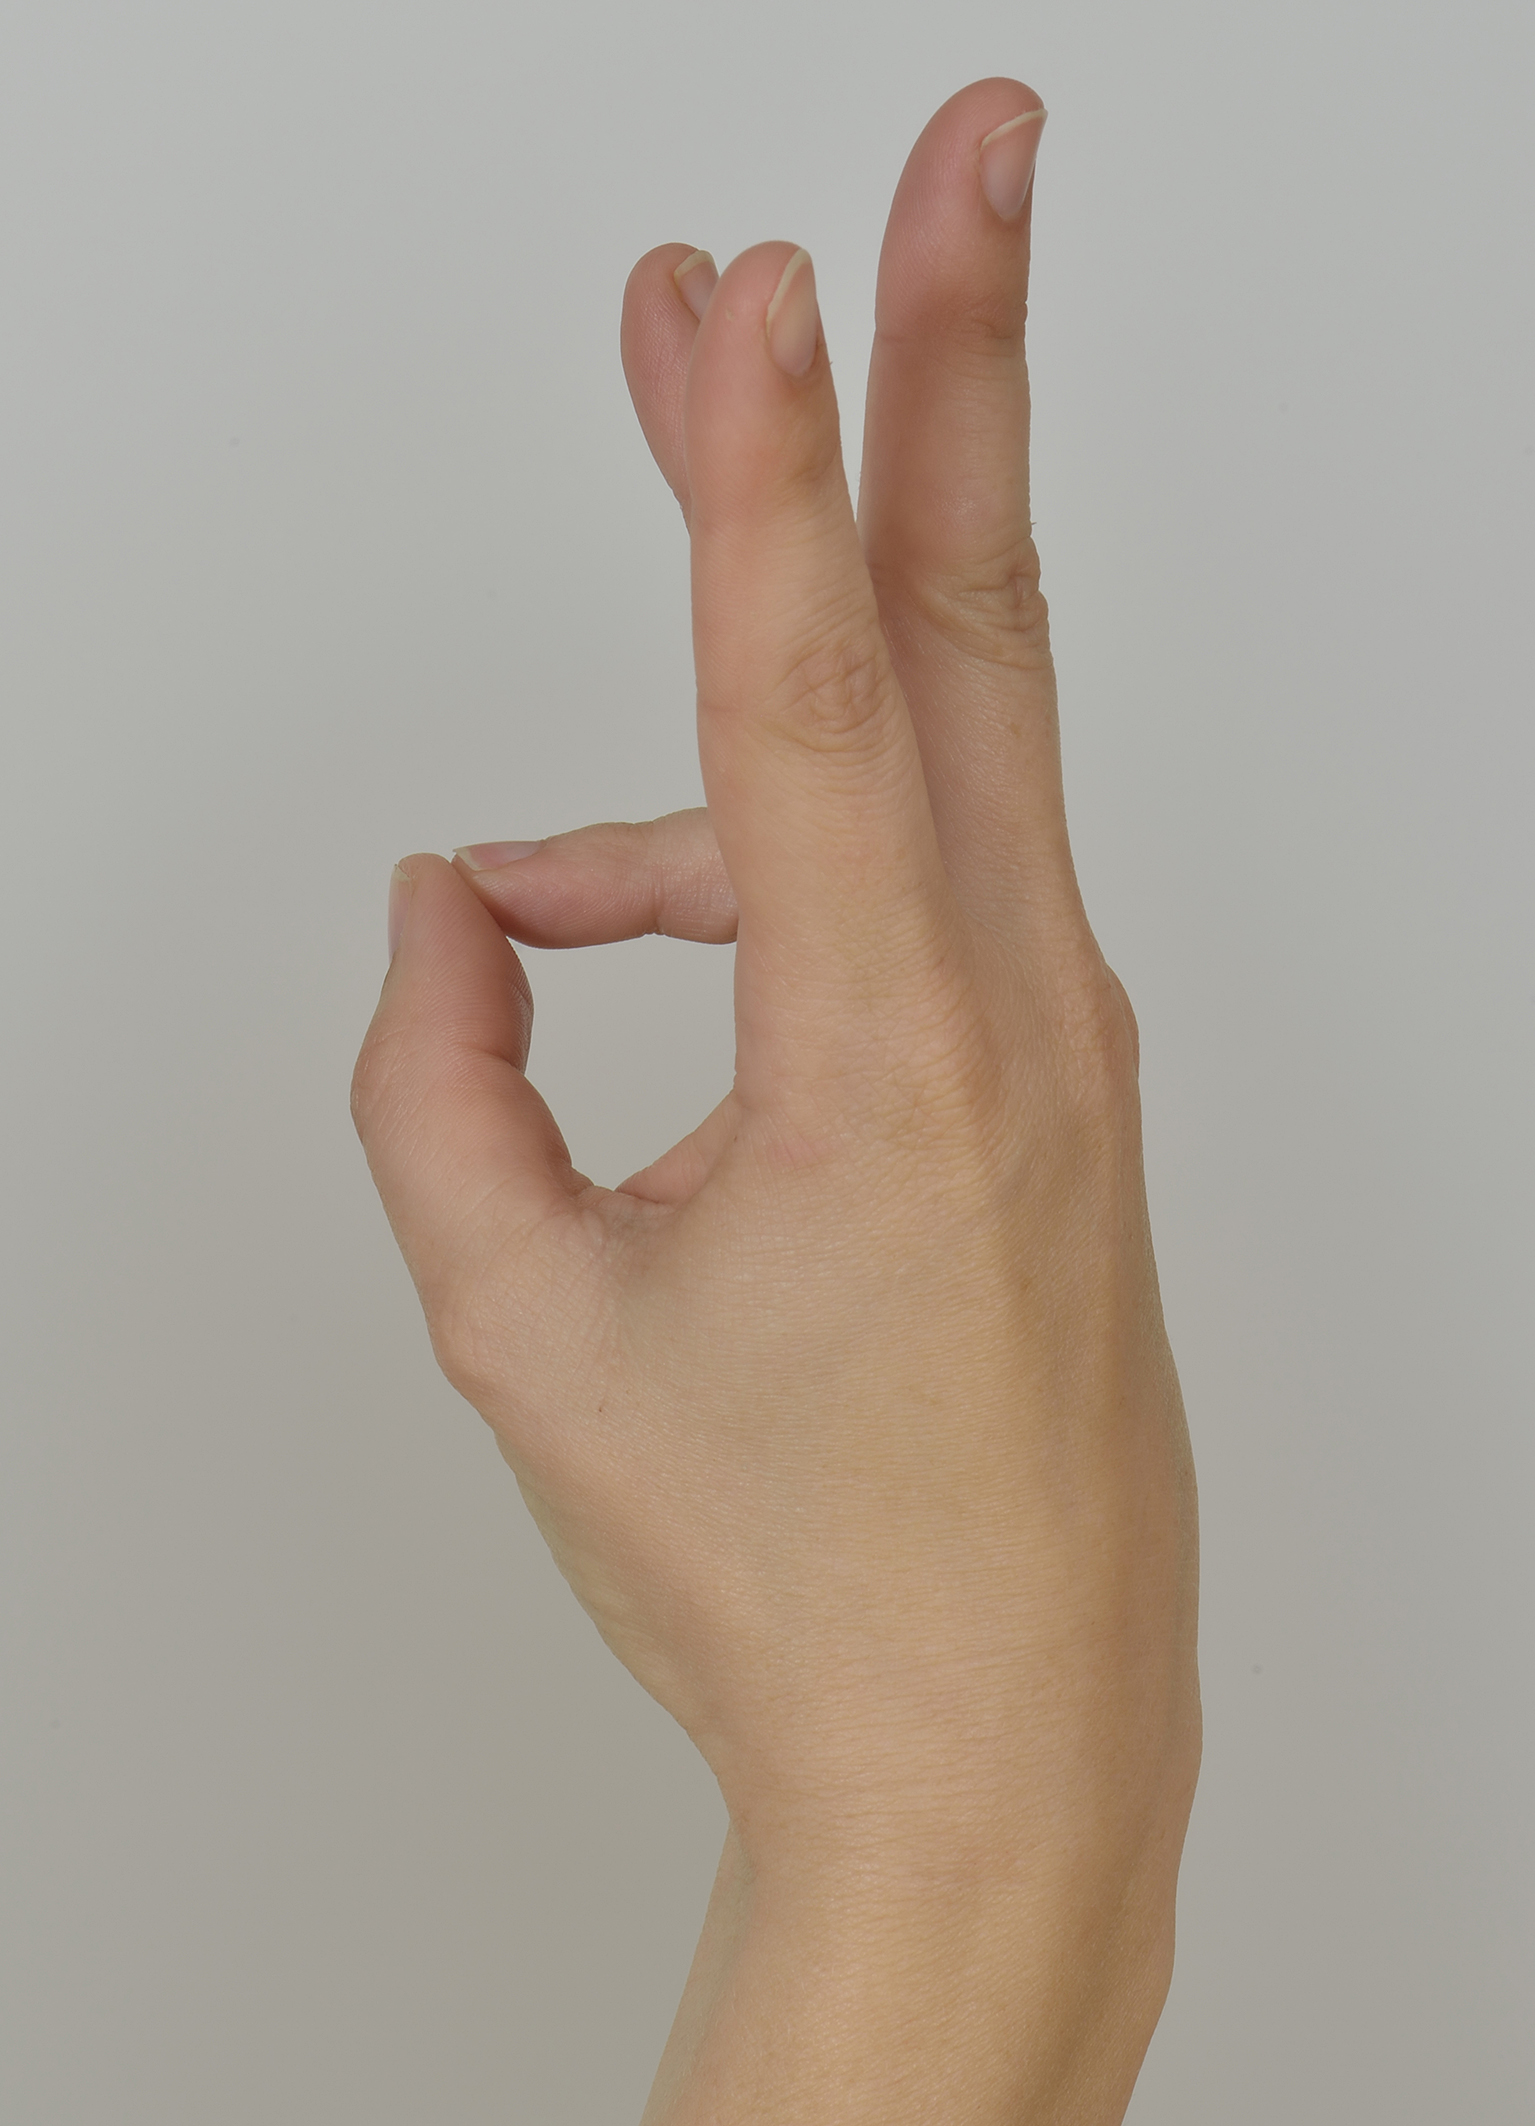 Foto oefening 5: duim tegen vingertoppen